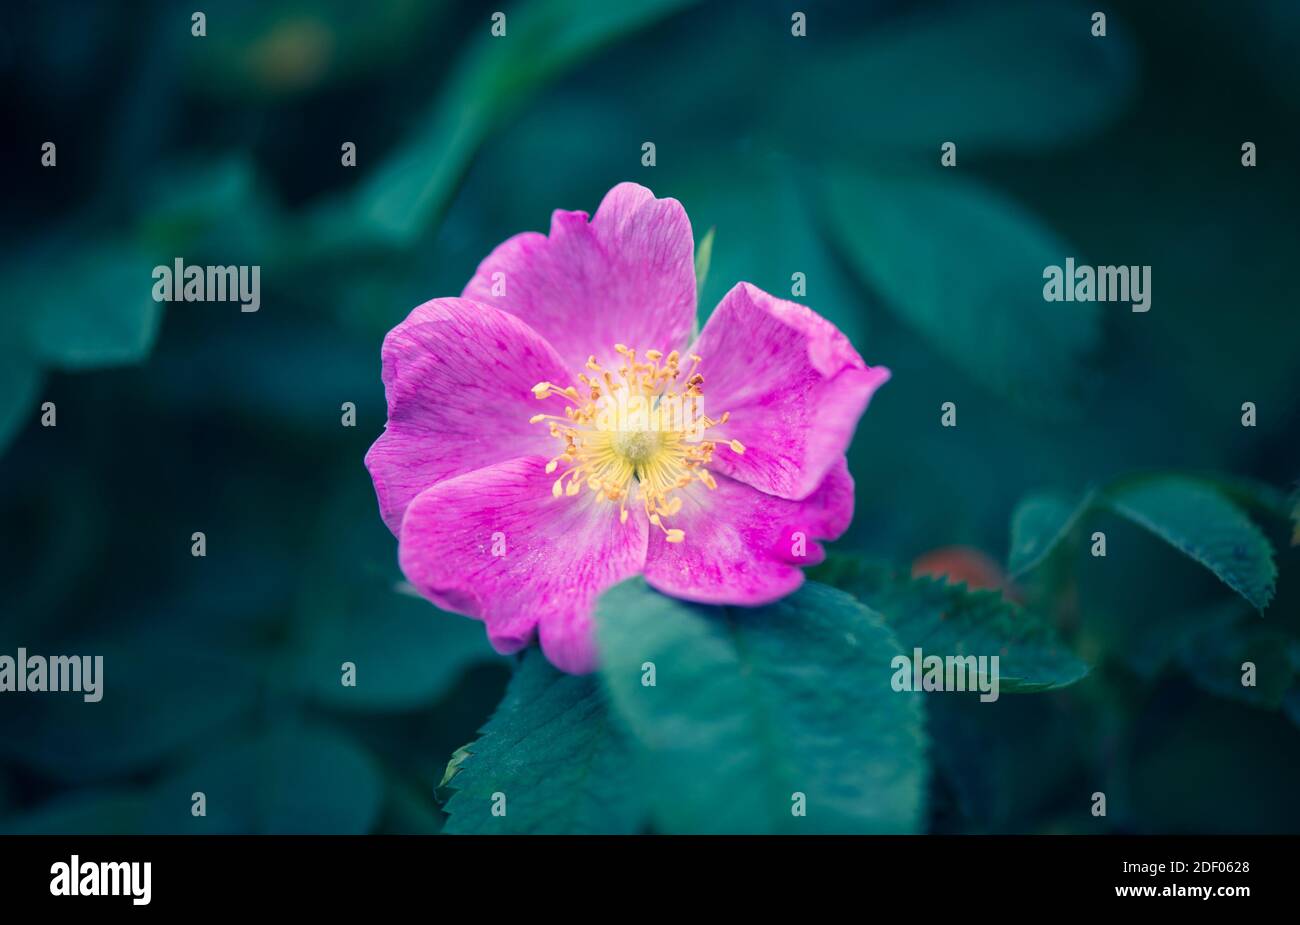 La fleur rose de rosehip se distingue sur un fond vert foncé de verdure. La beauté dans la nature. Banque D'Images